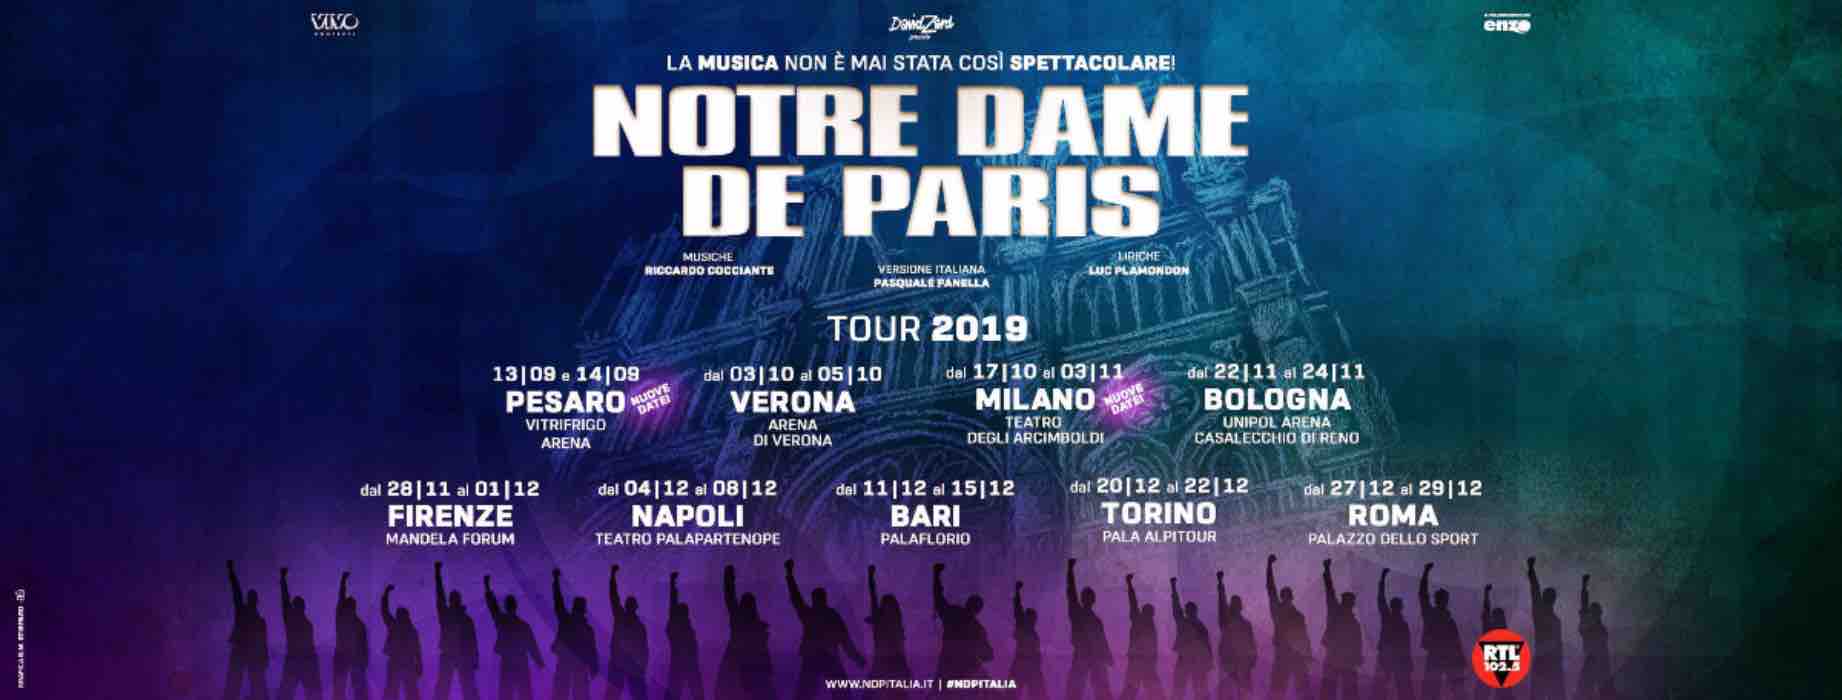 Notre-Dame de Paris Musical 2019: info, date del tour e cast